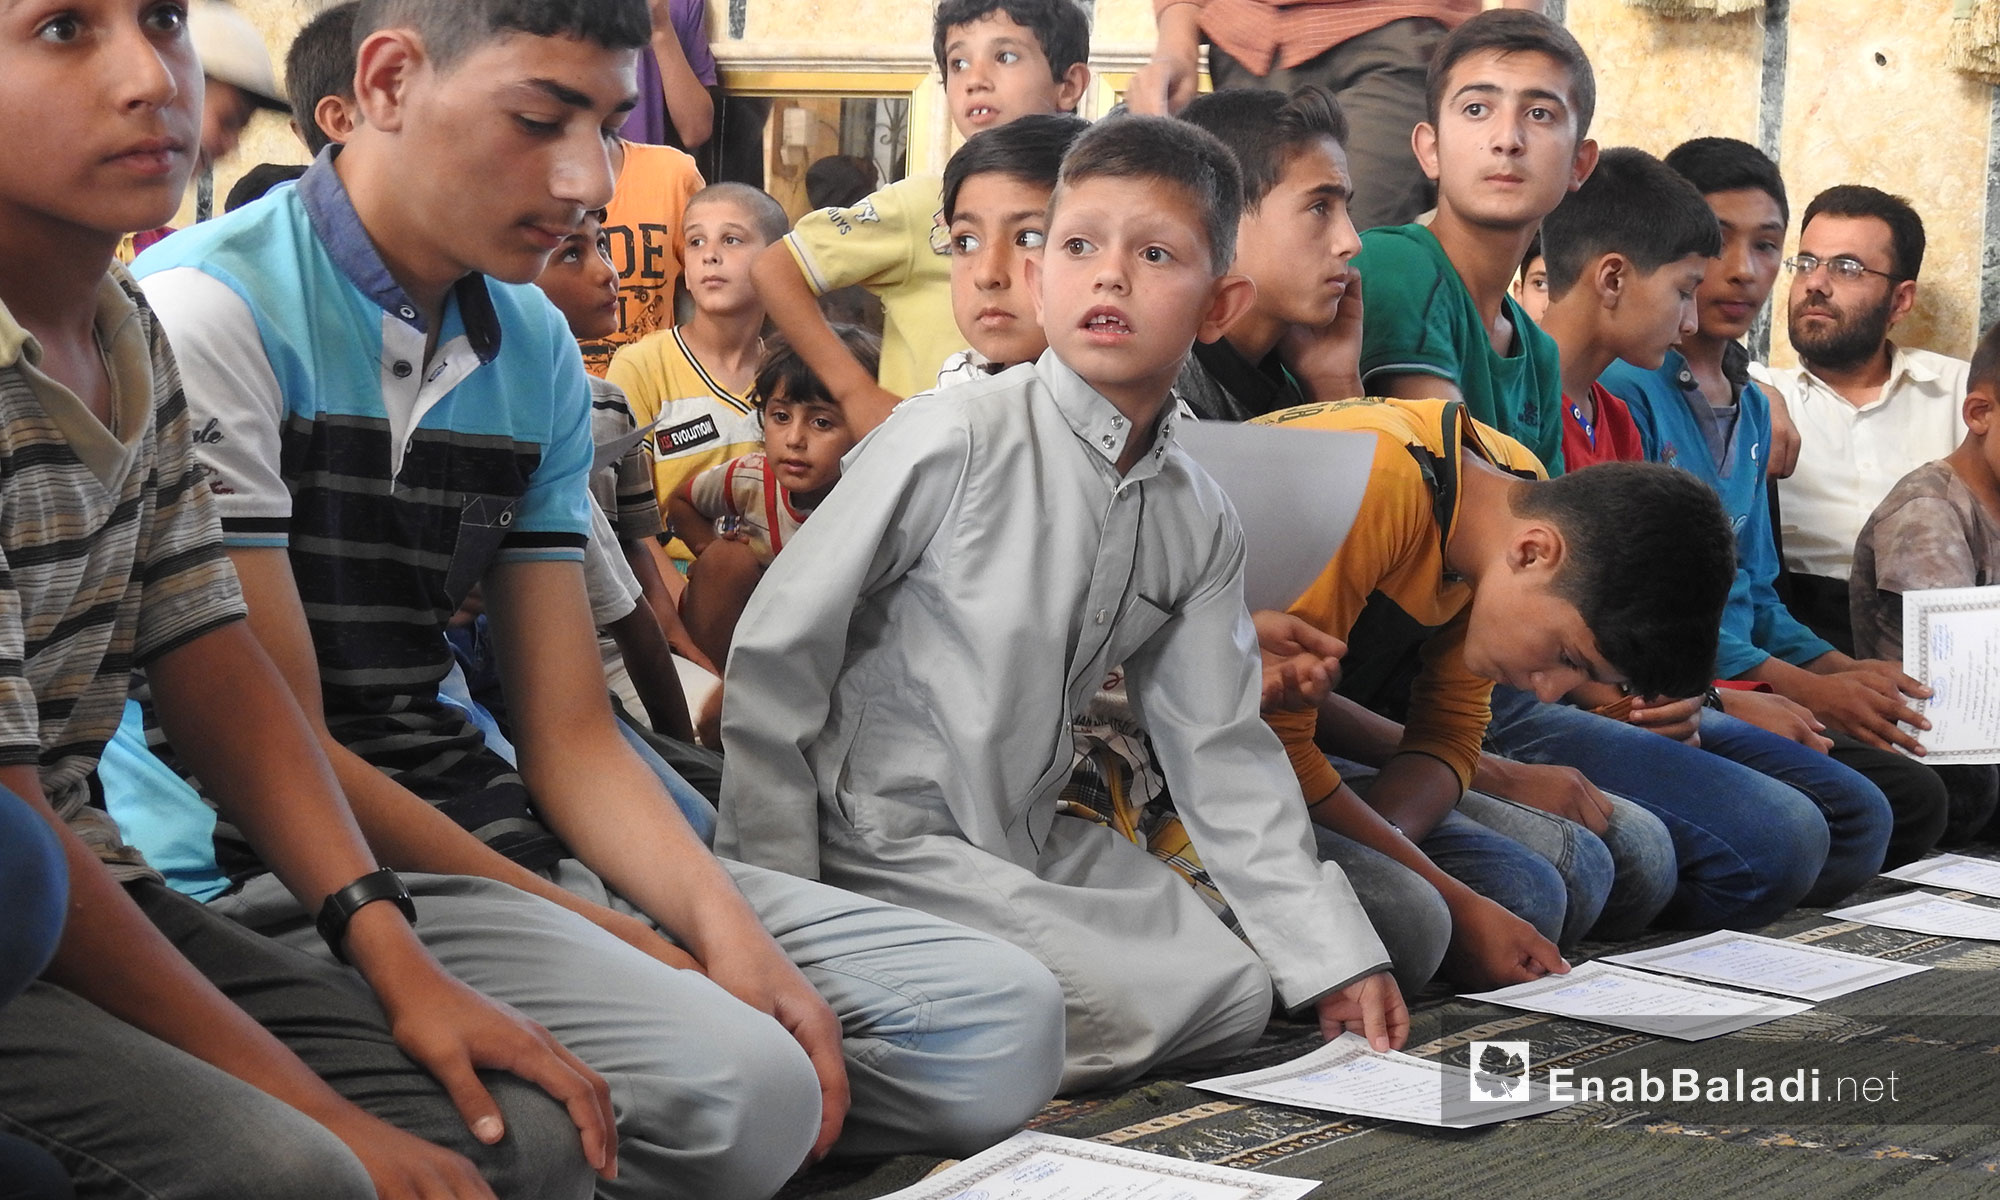 منتدى دابق الثقافي يكرم المتفوقين من حفظة القرآن الكريم في ريف حلب الشمالي - 12 حزيران 2018 (عنب بلدي)